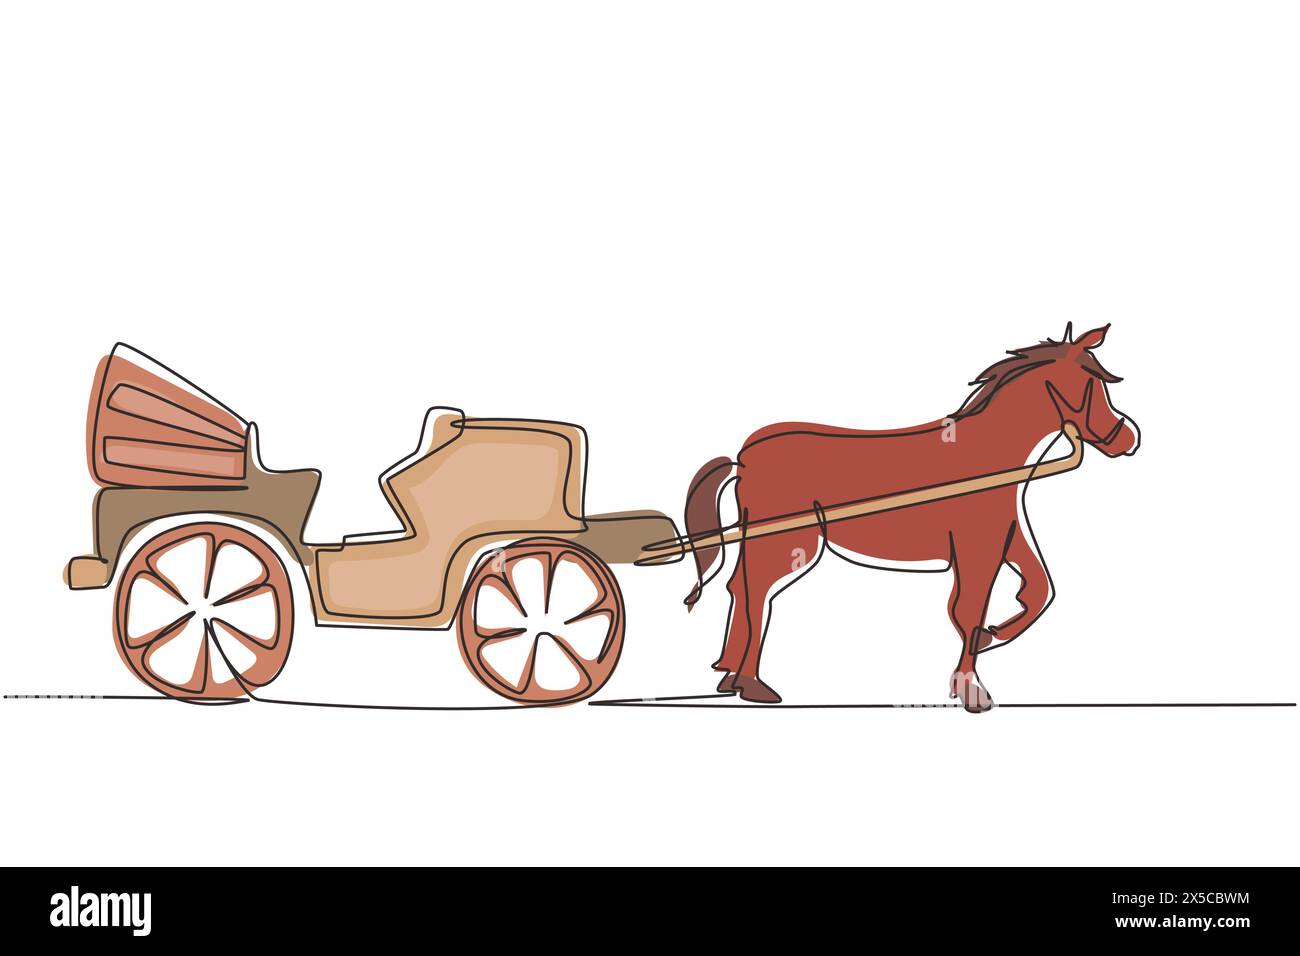 Trasporto d'epoca su una sola linea, carrozza trainata da cavalli. Una vecchia carrozza con un cavallo, un cavallo tira una carrozza dietro di lui. Moderno continentale Illustrazione Vettoriale